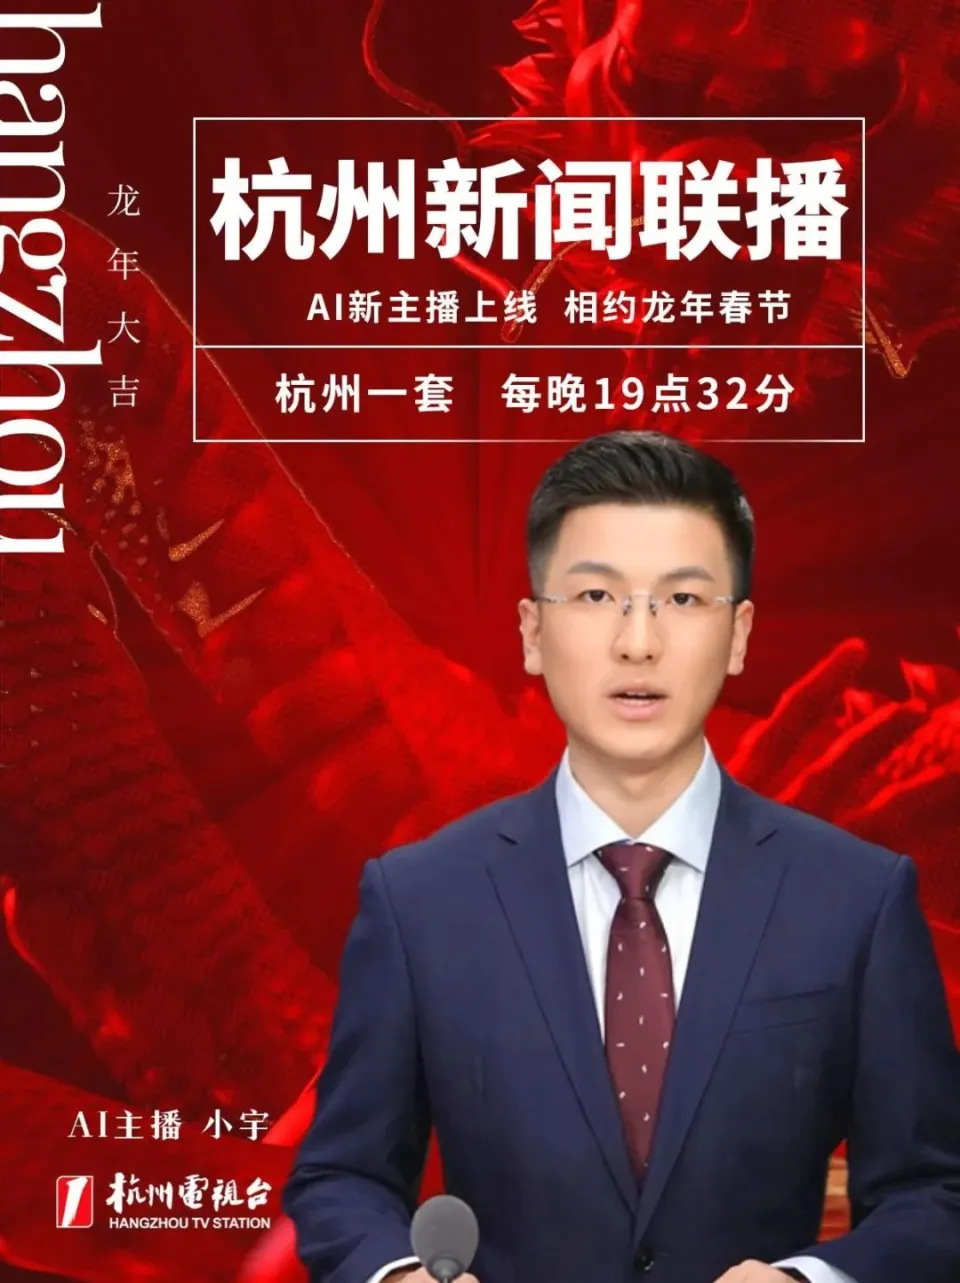 《杭州消息联播》首推全 AI 主持播报，真人主播能回家过年了 第2张图片